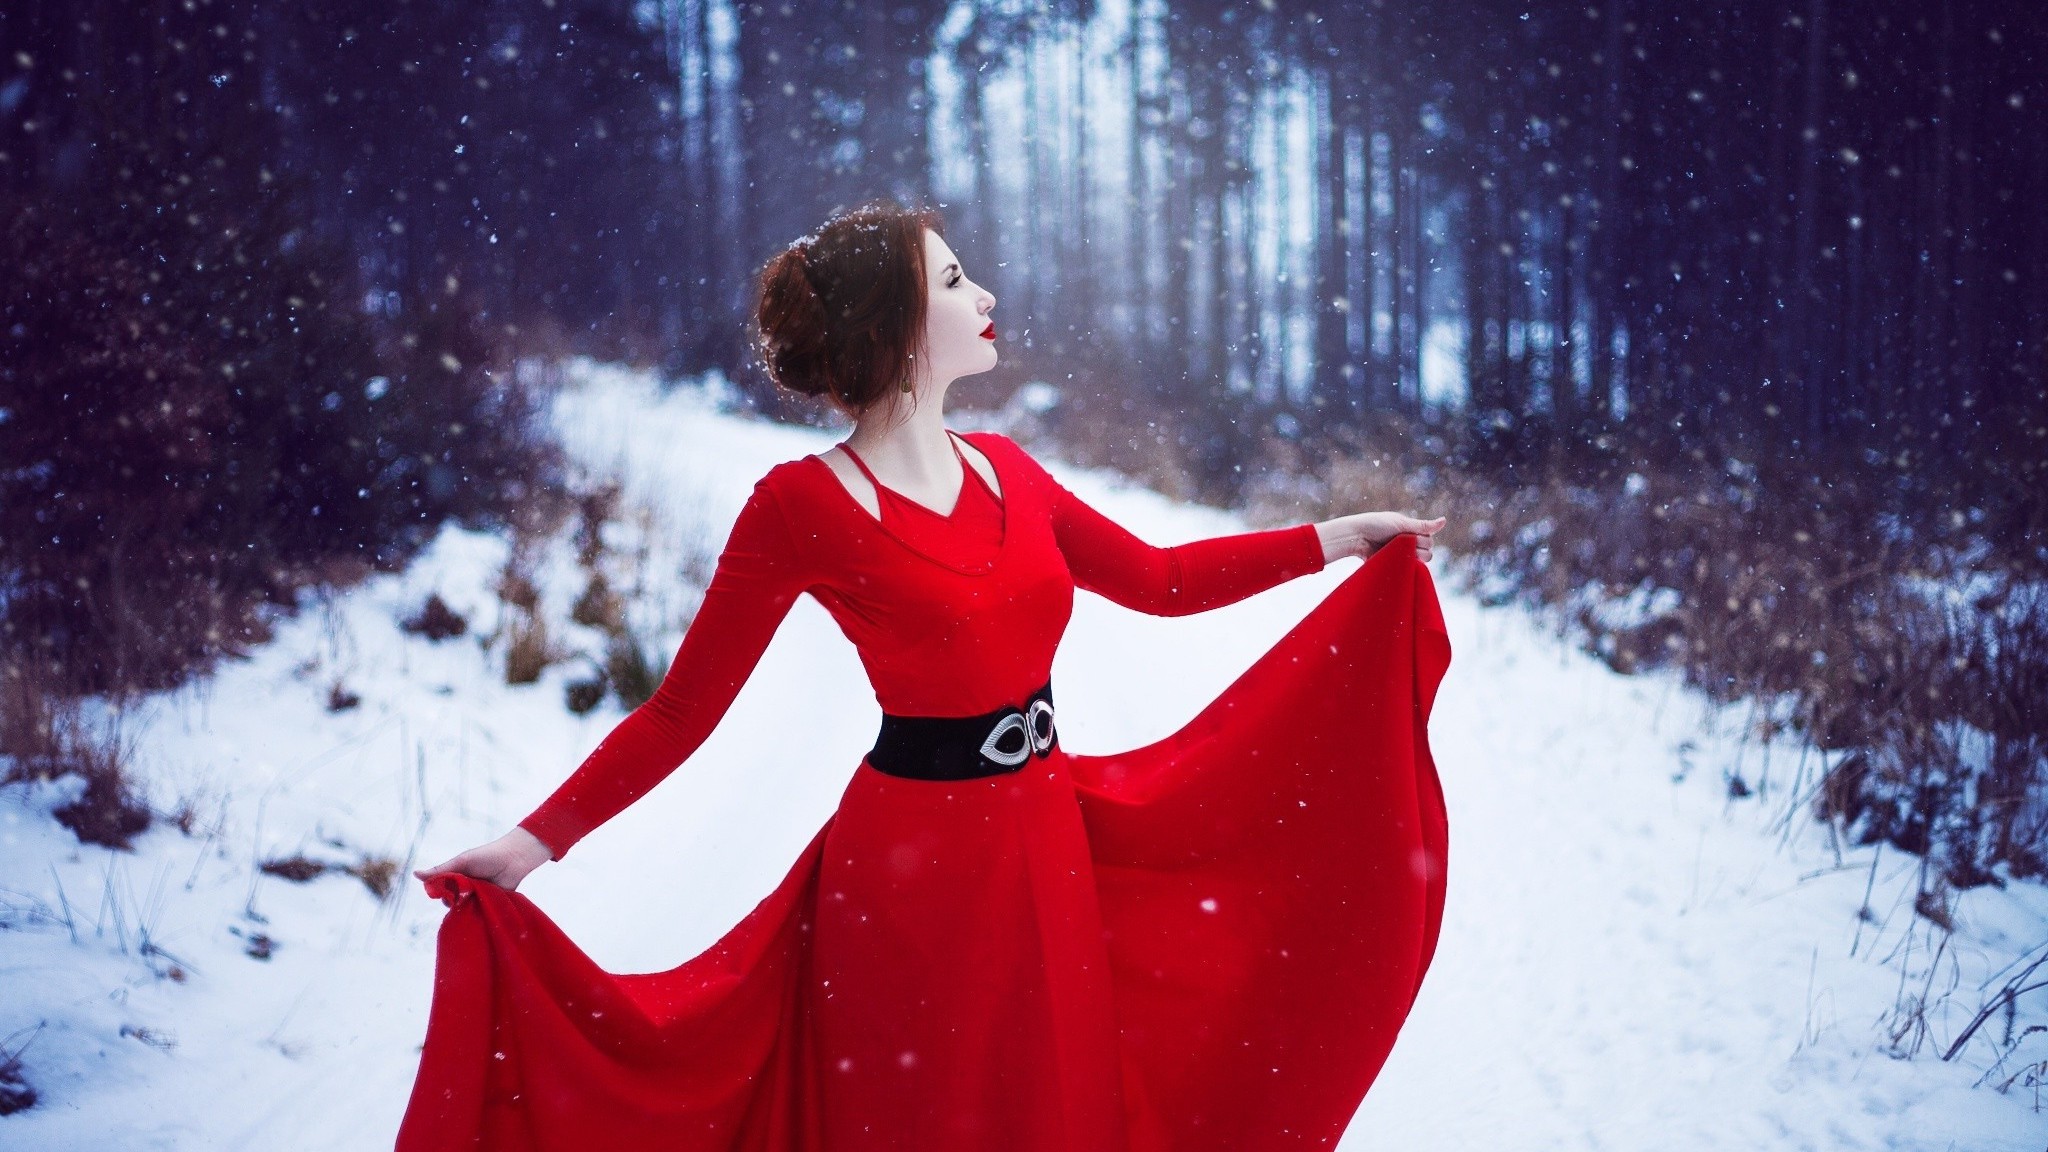 2048x1152 Red Dress Woman In Snow 2048x1152 Resolution HD 4k ...